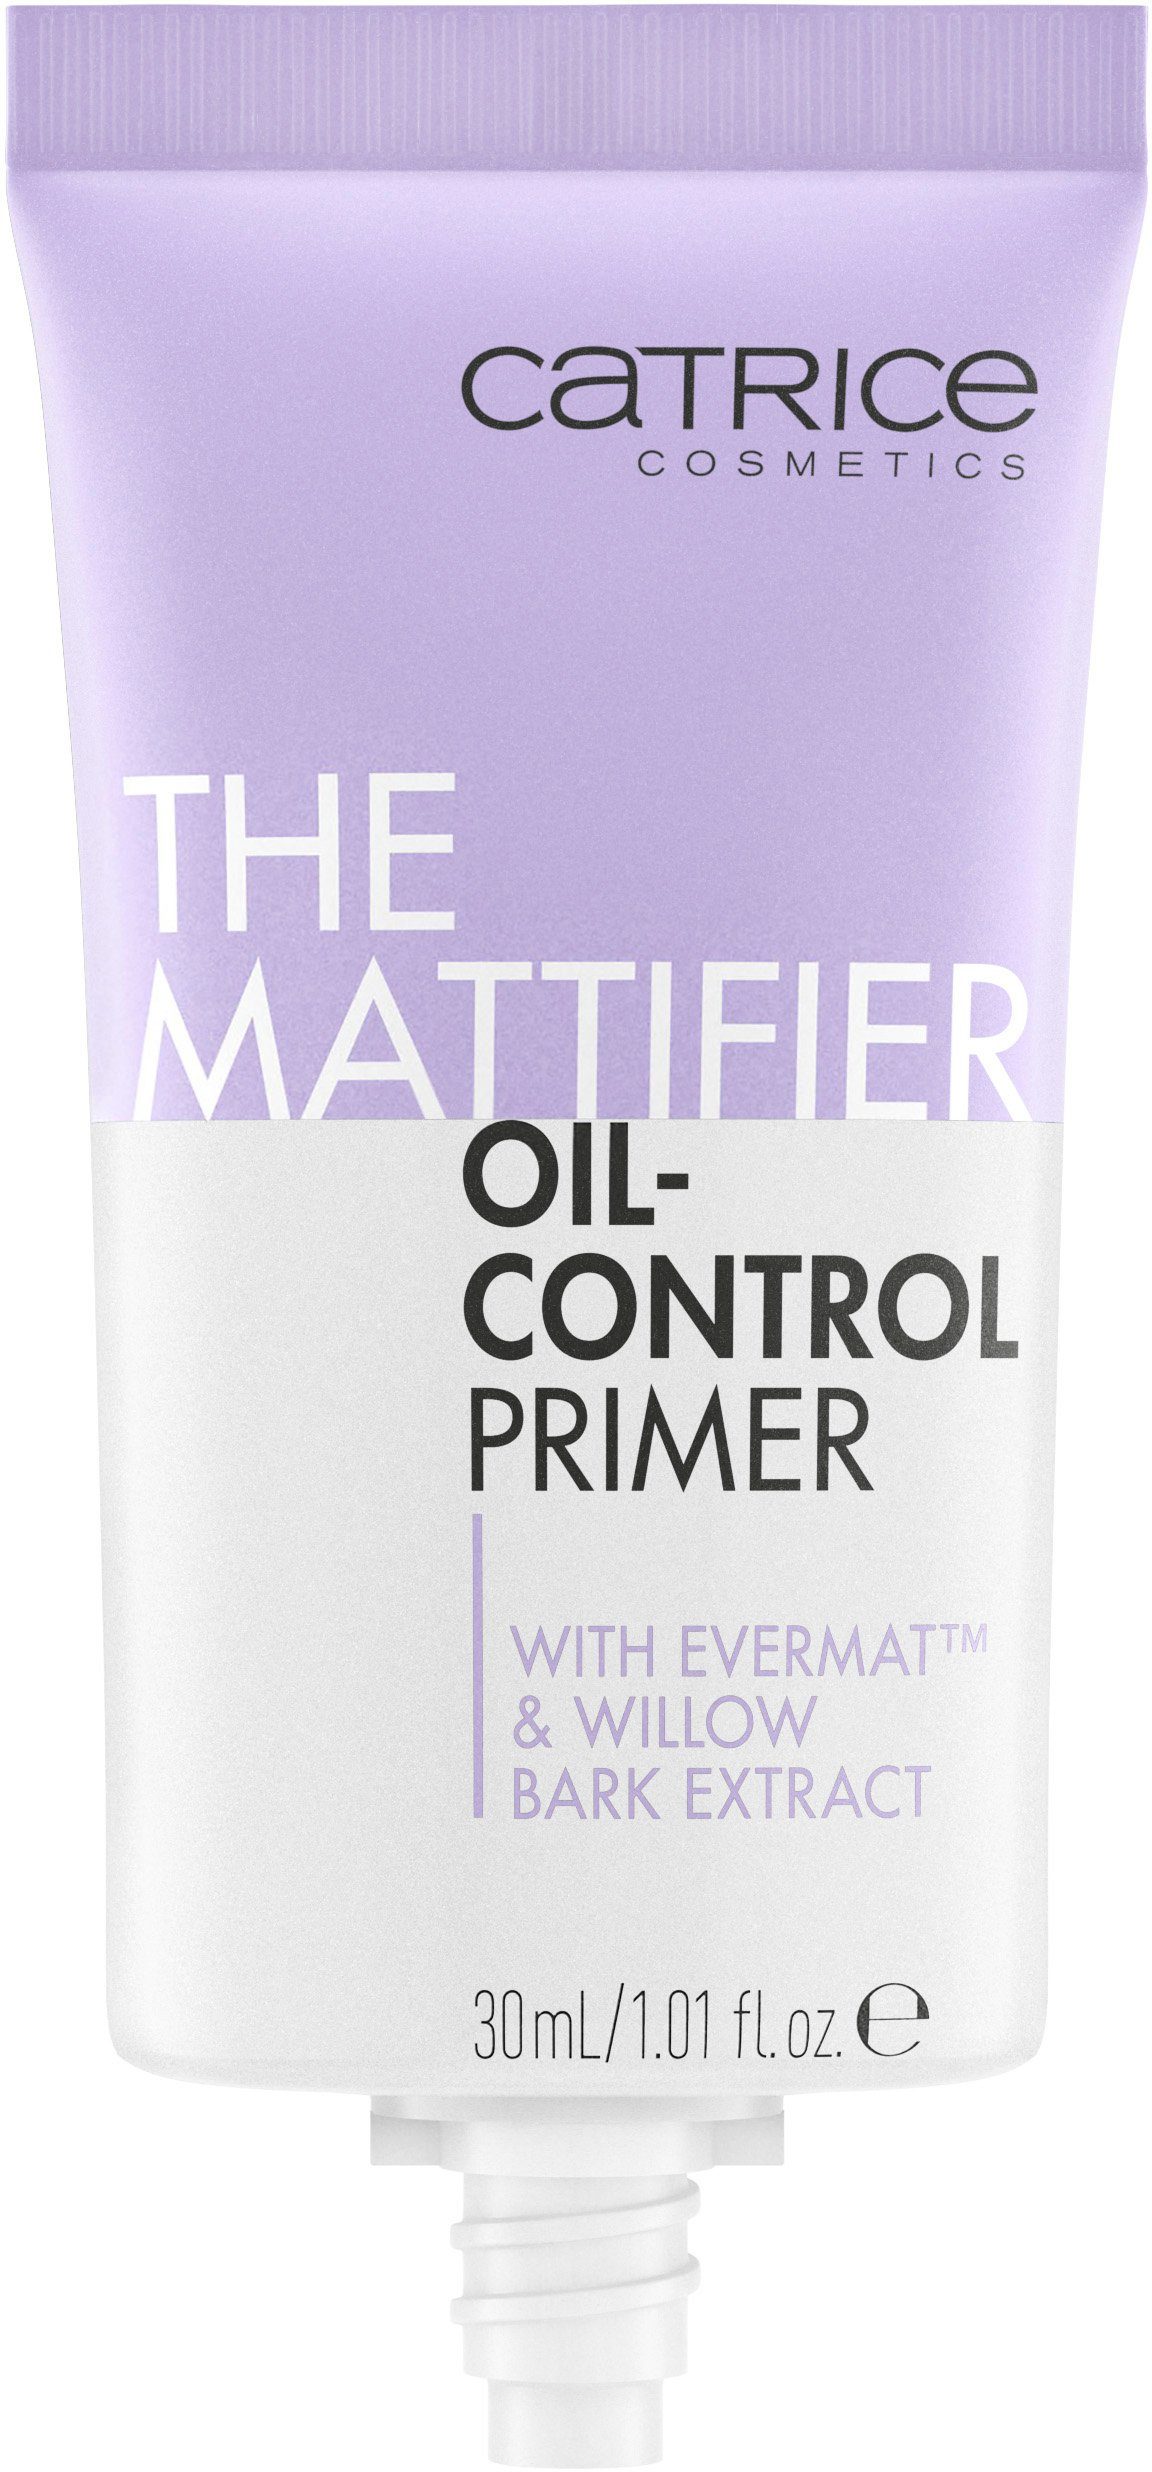 Catrice Oil-Control Primer, Primer Mattifier The